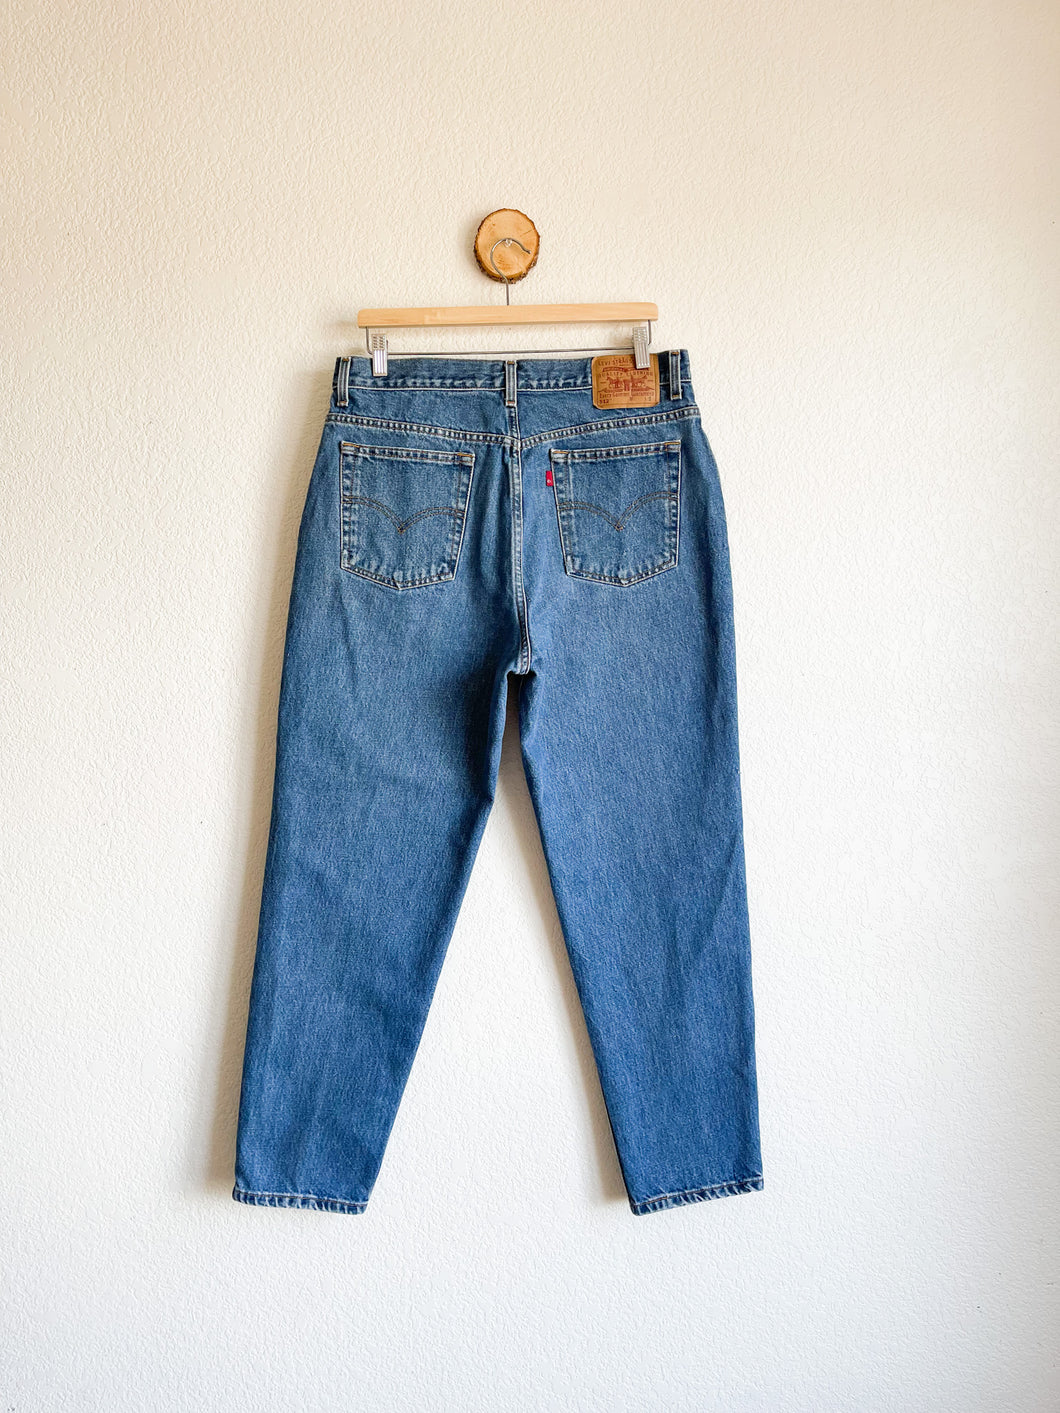 Vintage Levi's 512 Jeans - 35